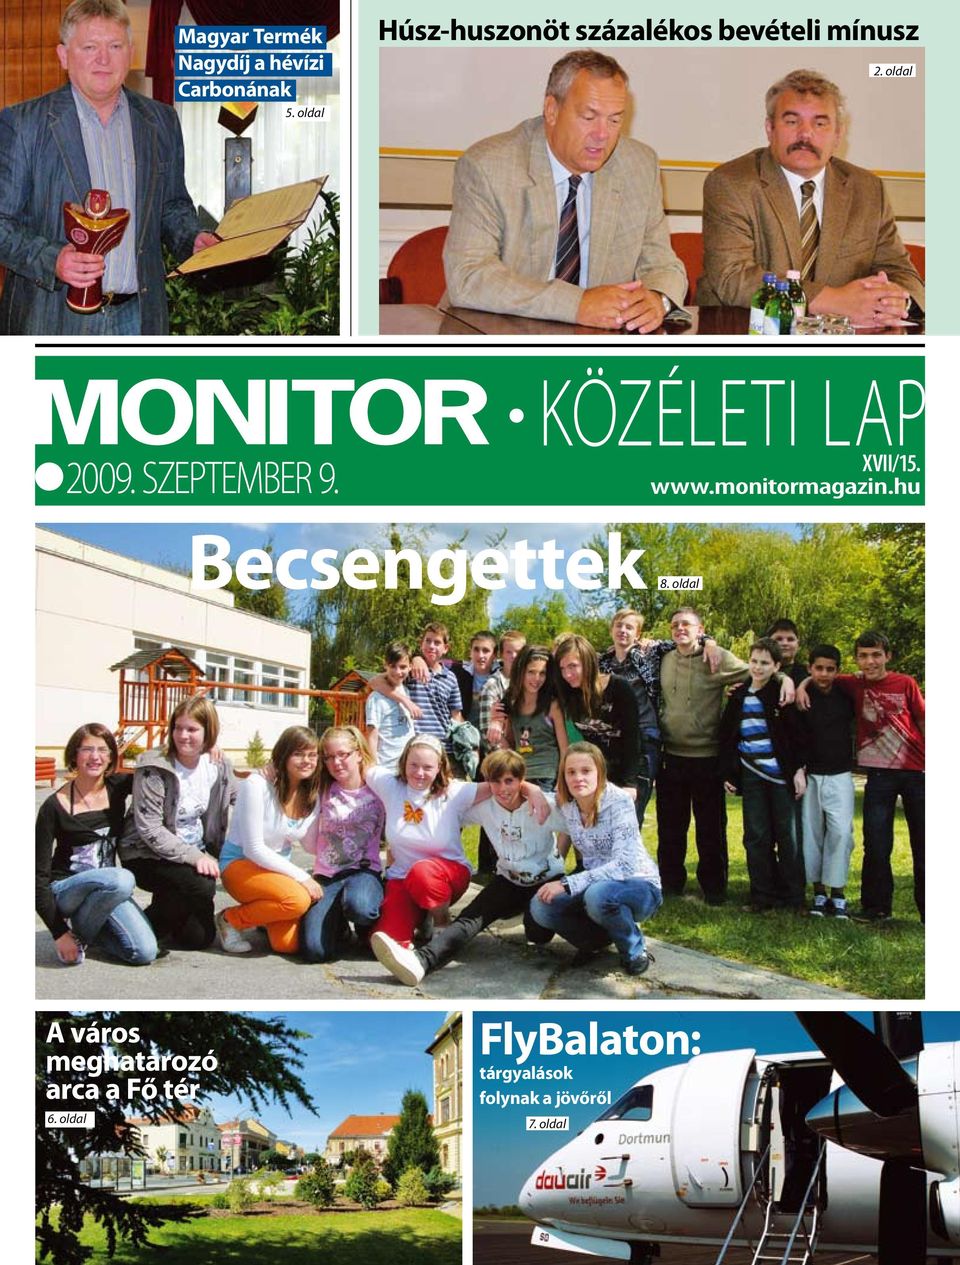 szeptember 9. közéleti lap xvii/15. www.monitormagazin.